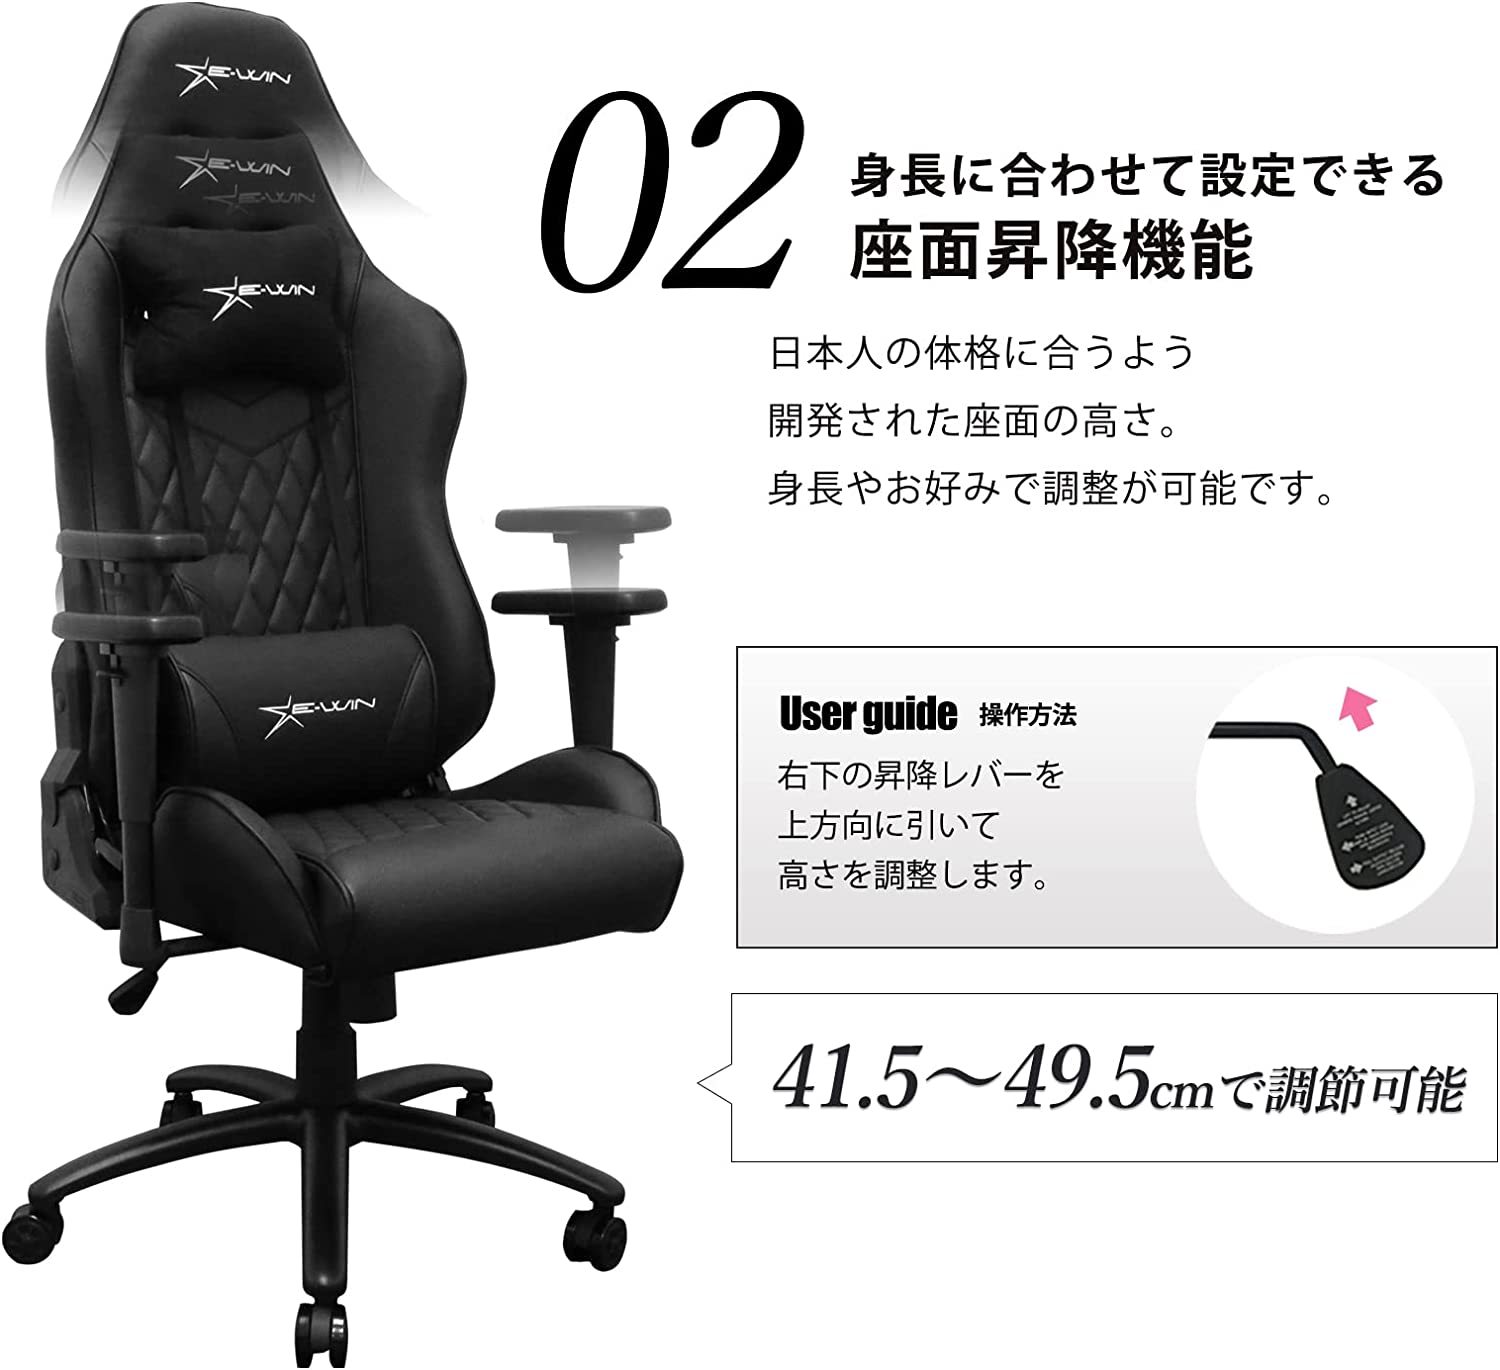 ゲーミングチェア ゲーミング椅子 オフィスチェア 小さめ 小柄 ピンク